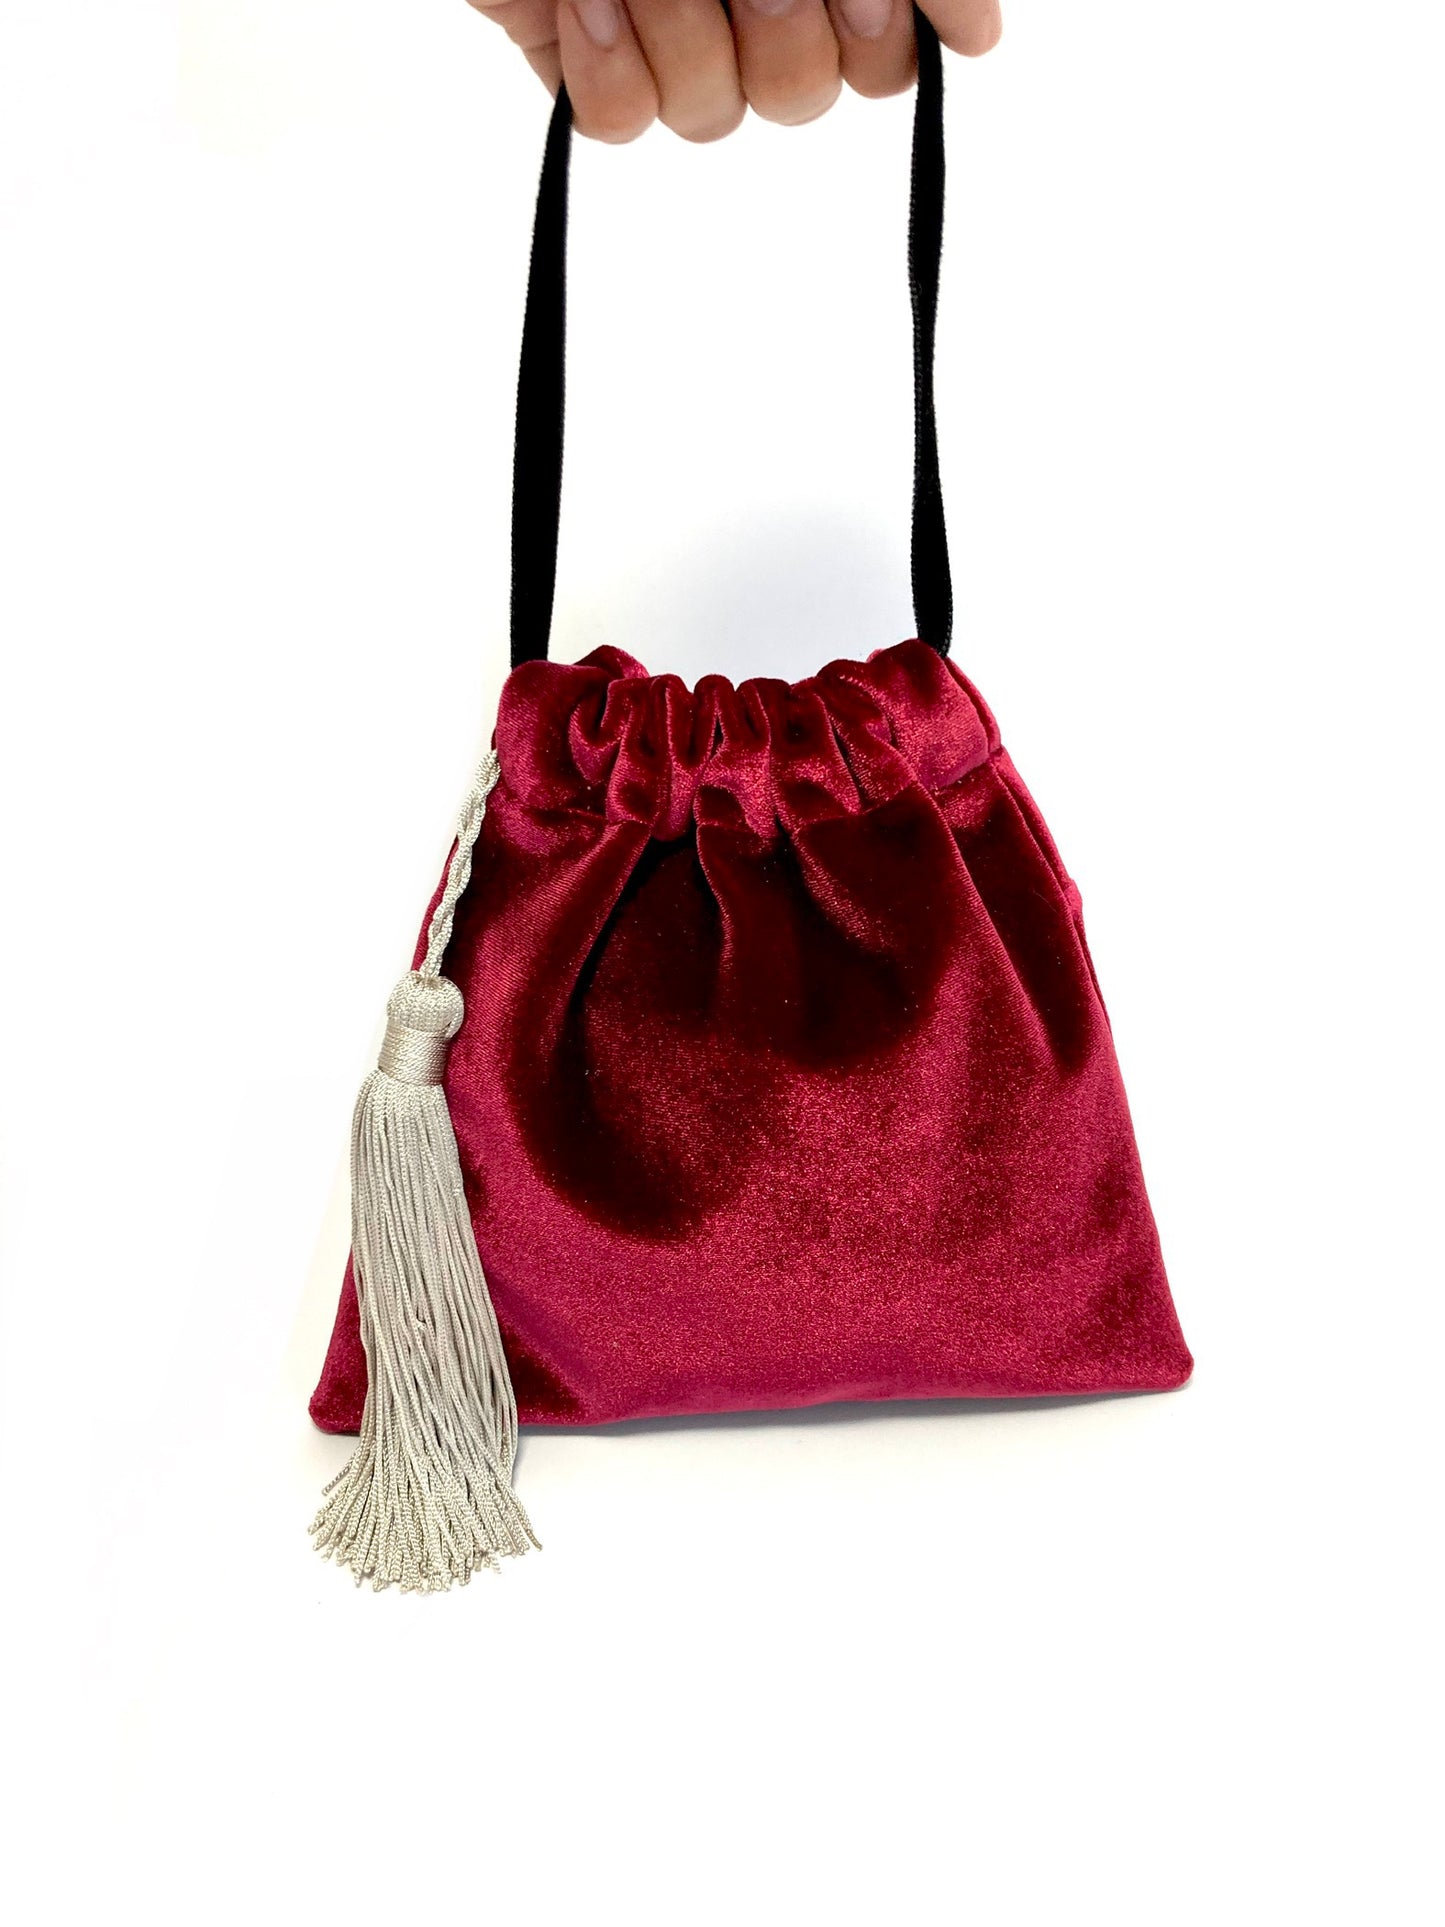 Red velvet little handbag